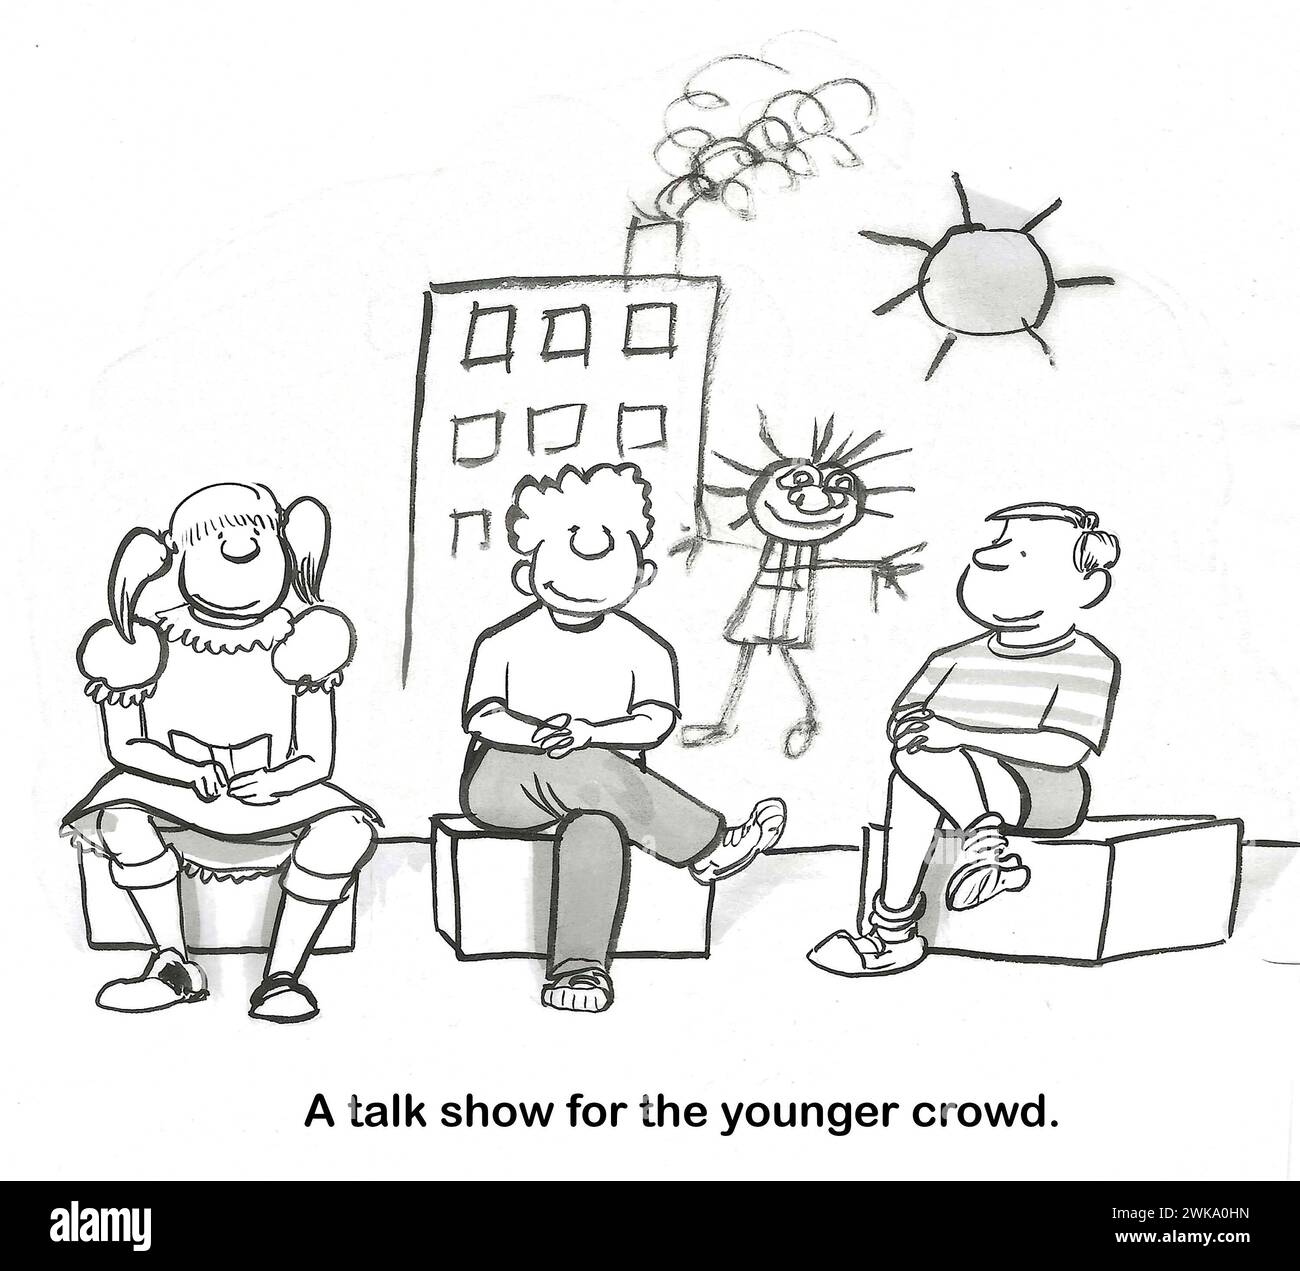 Bande dessinée BW montrant des enfants sur un set de talk-show tv, un talk-show a finalement été développé pour les enfants. Banque D'Images